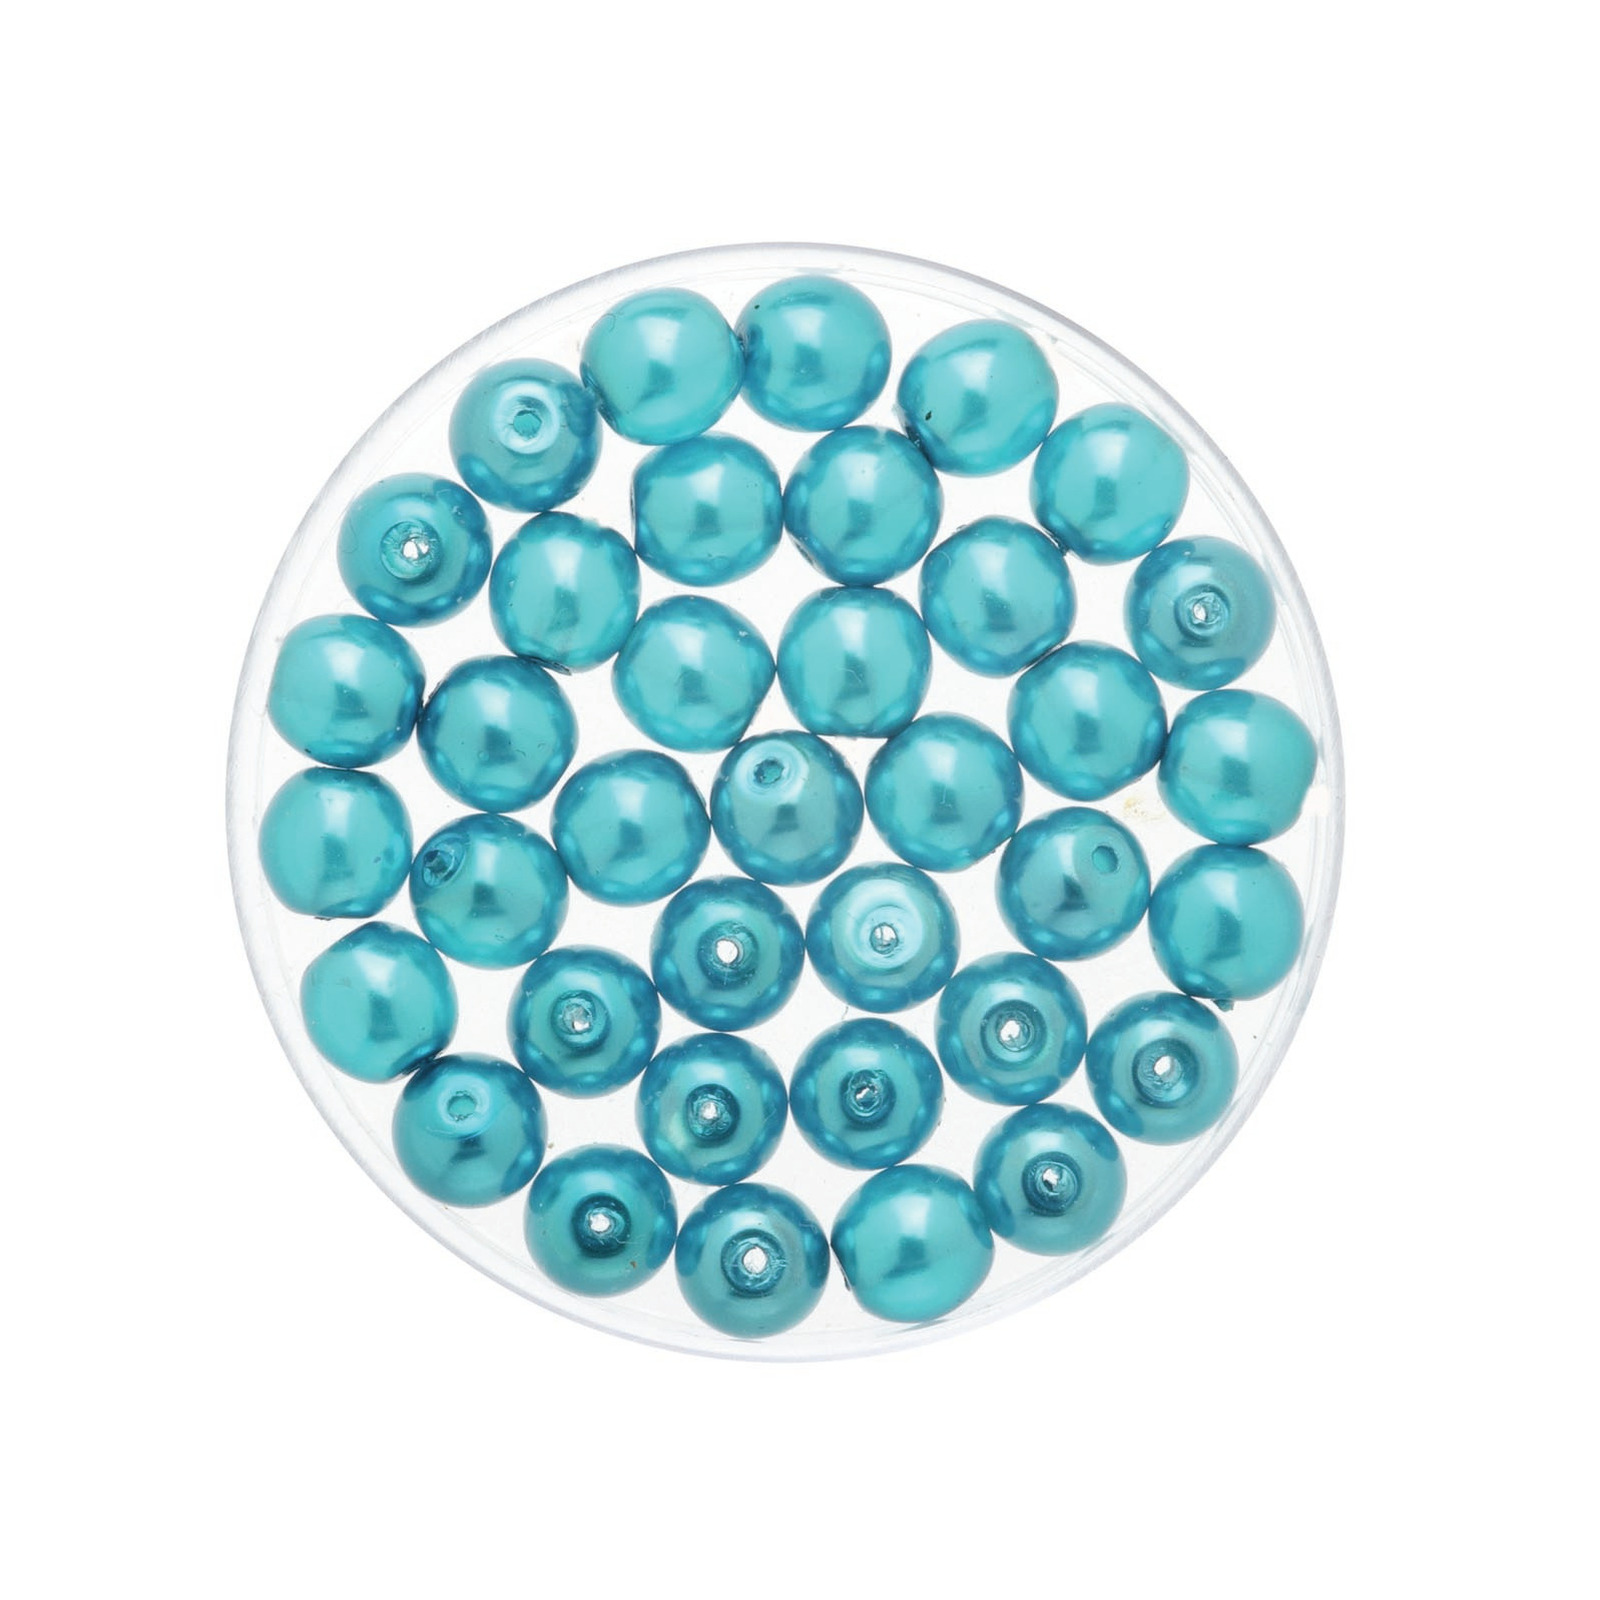 250x stuks sieraden maken Boheemse glaskralen in het transparant turquoise van 6 mm